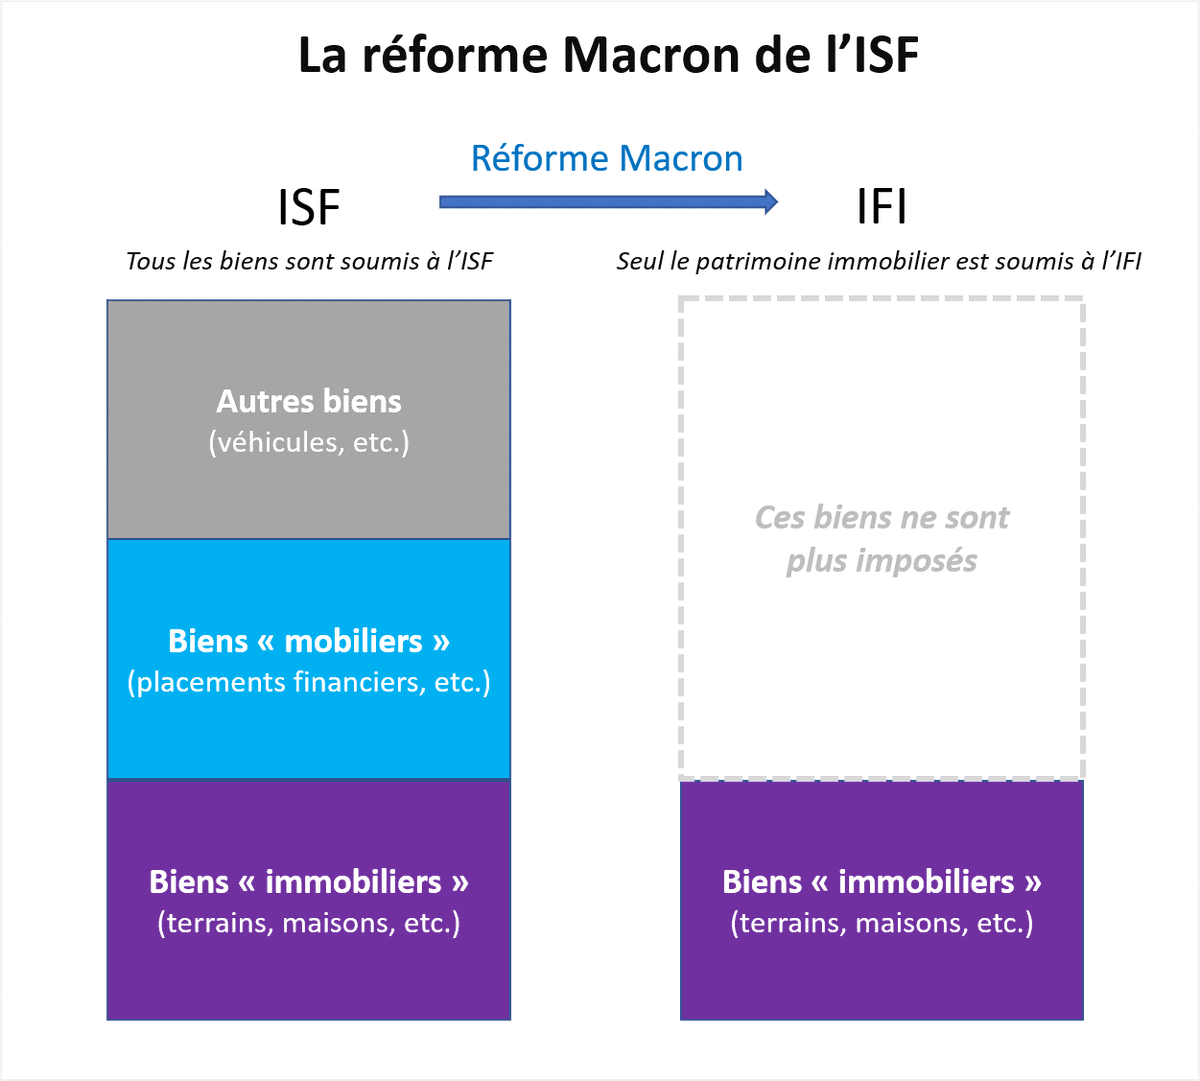 En 2017 La réforme Macron de l'ISF a consisté à ne plus imposer (entre autres) les biens dits "mobiliers" des plus riches, c'est à dire leurs placements financiers Source :  https://www.mediapart.fr/journal/france/100817/reforme-de-l-isf-l-imposture-du-financement-de-l-economie